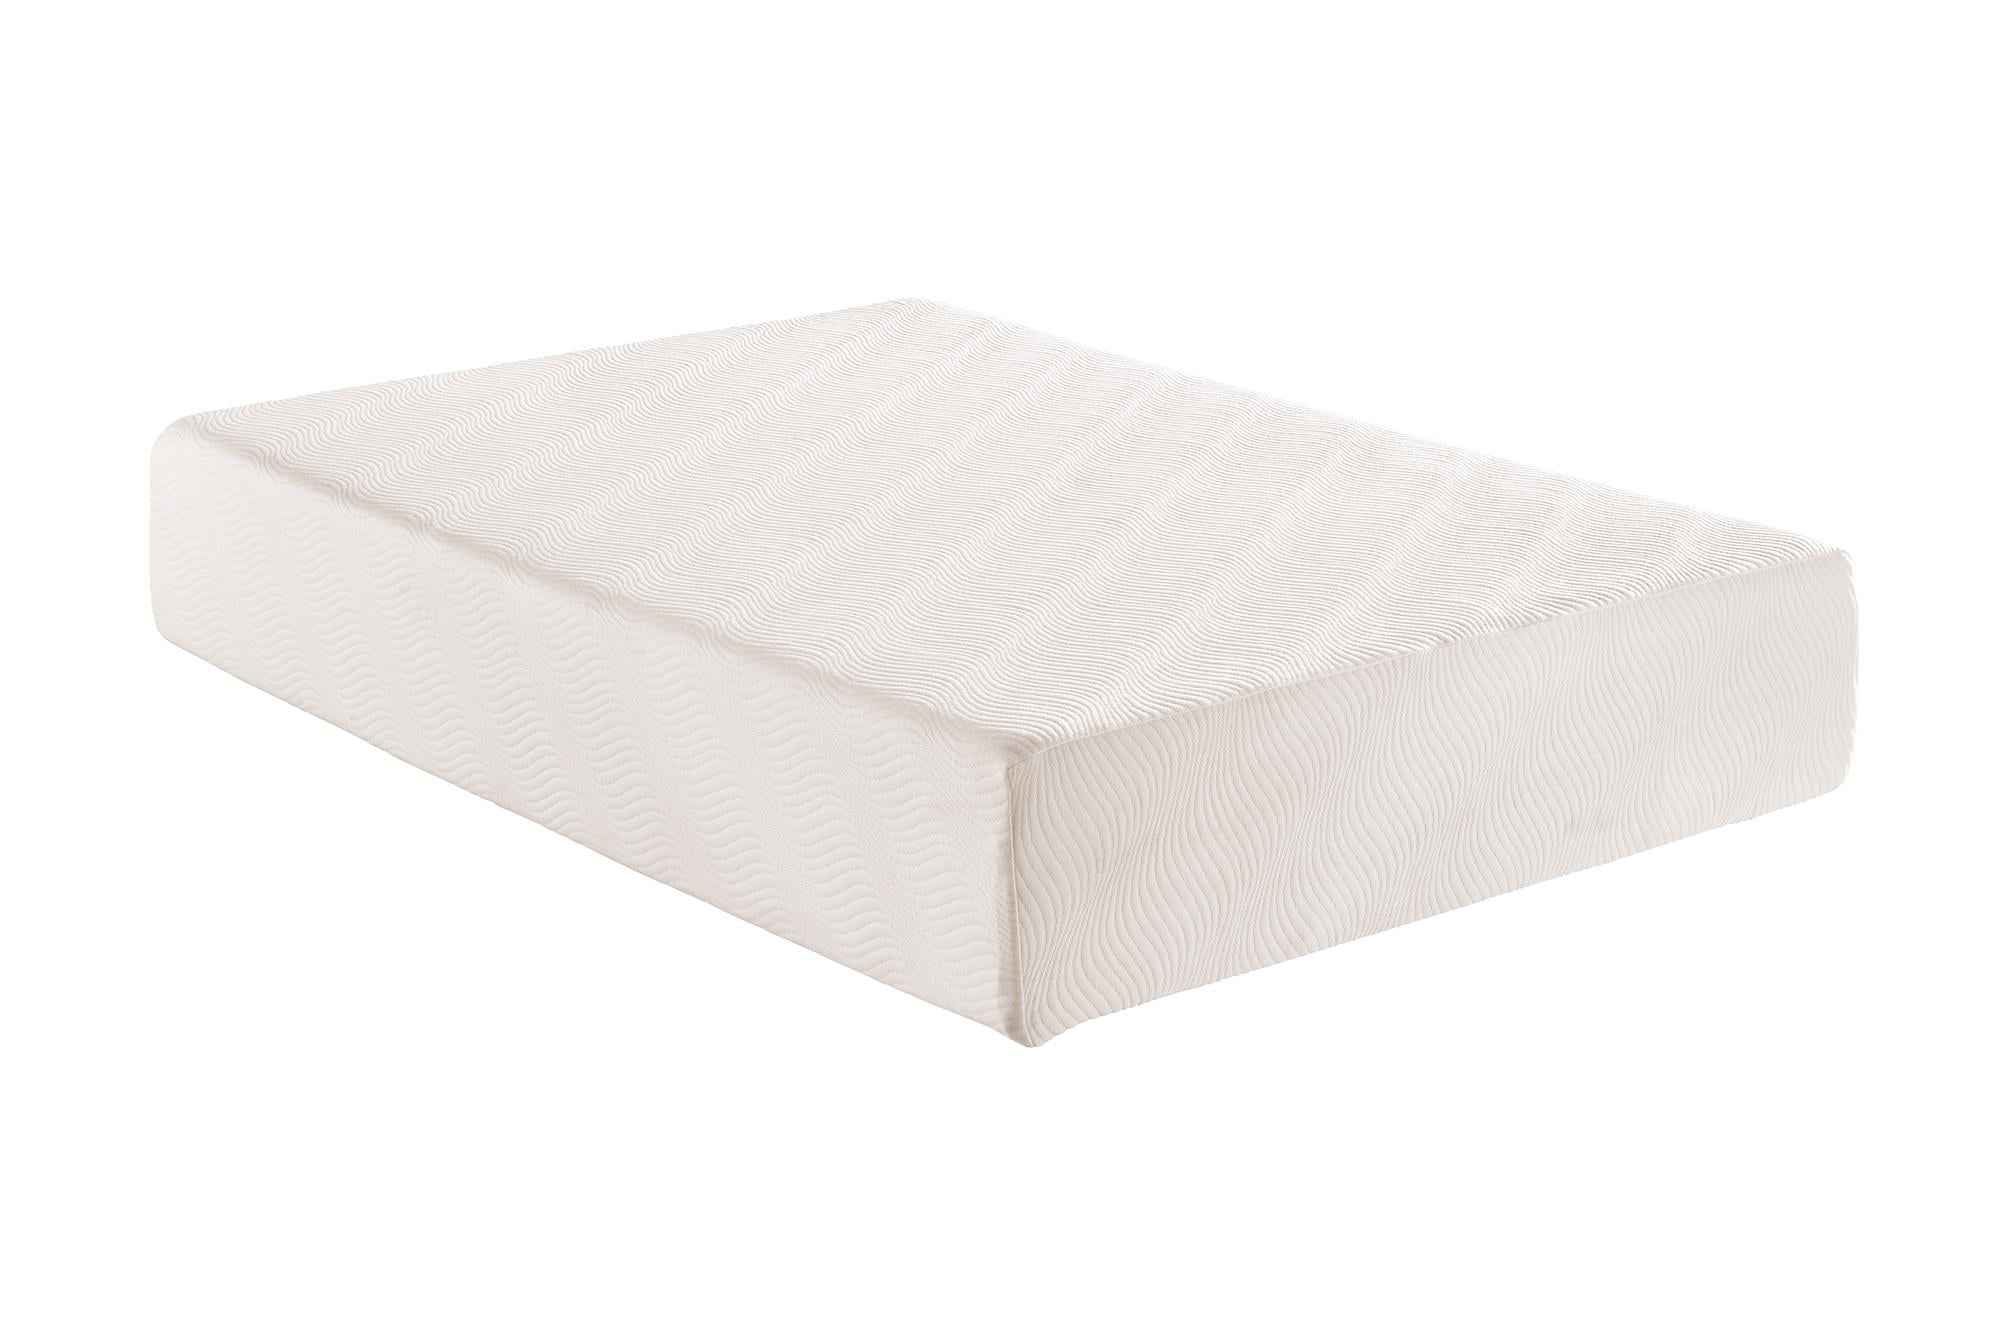 mainstays 8 memory foam mattress review